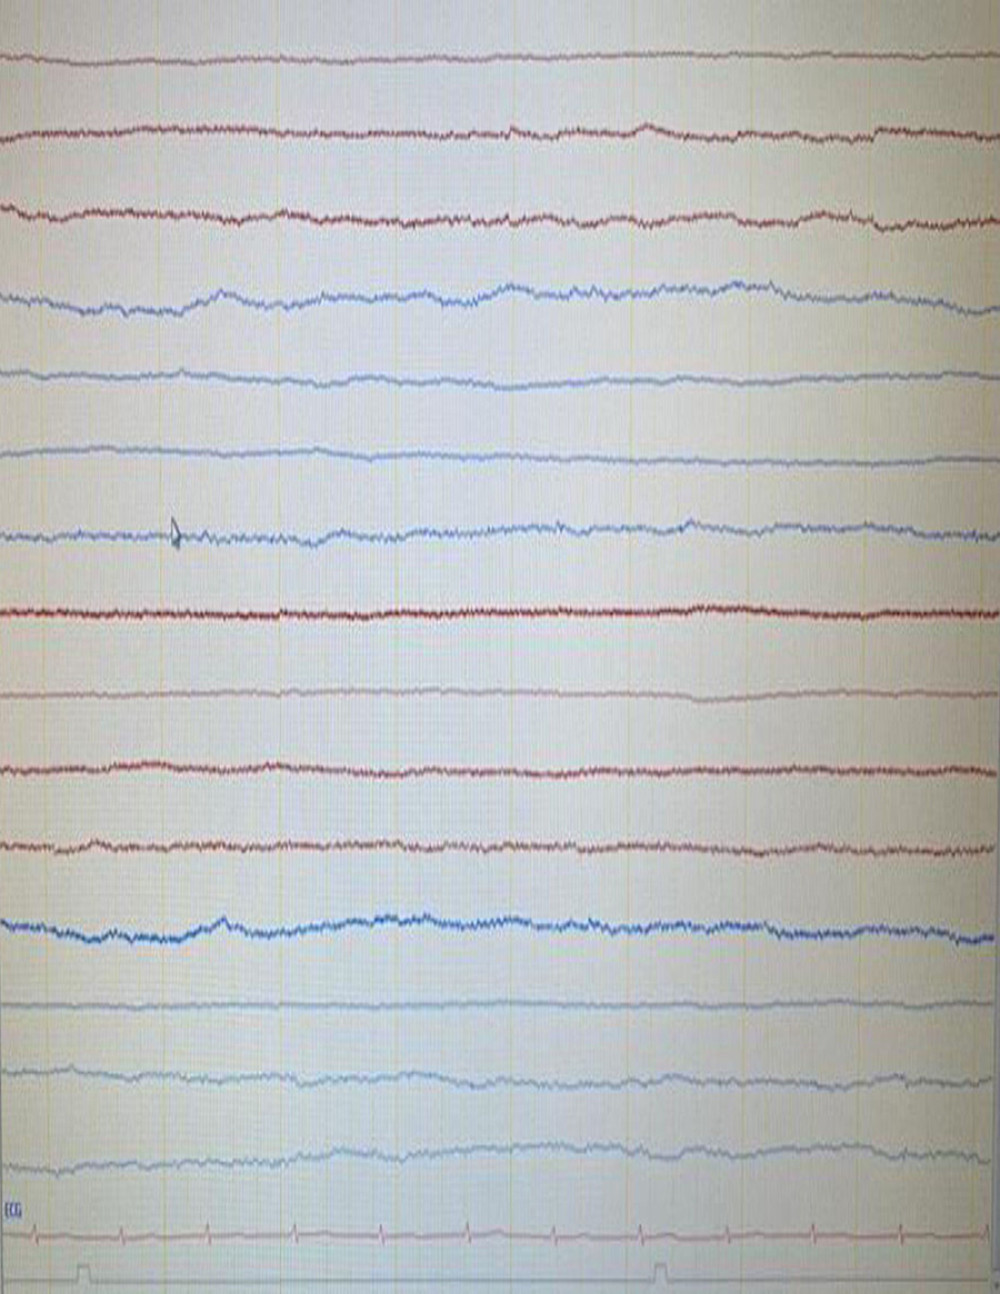 Electroencephalogram EEG showing isoelectric findings.